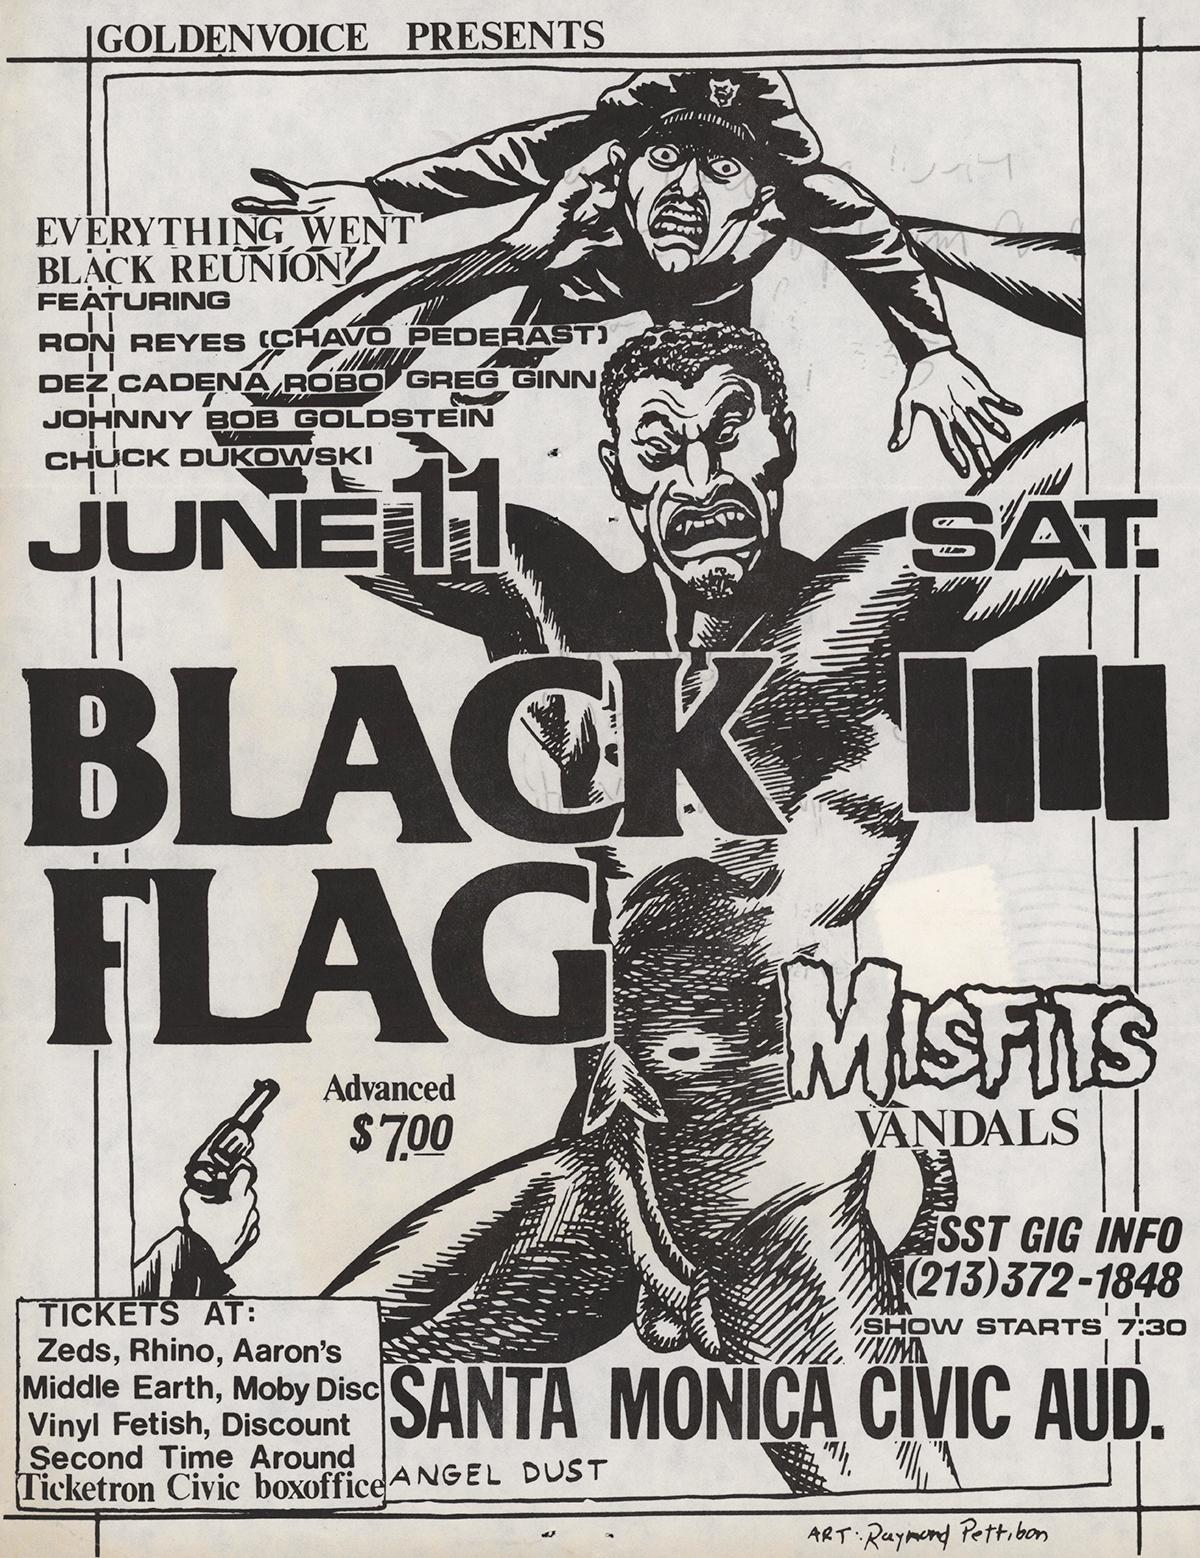 Raymond Pettibon : Rare flyer punk de Black Flag : 
Black Flag Santa Monica Civic Auditorium, 11 juin 1983. Santa Monica, CA.   Flyer / prospectus pour un concert de Black Flag, Misfits, Vandals avec des illustrations de Pettibon. Portant le cachet